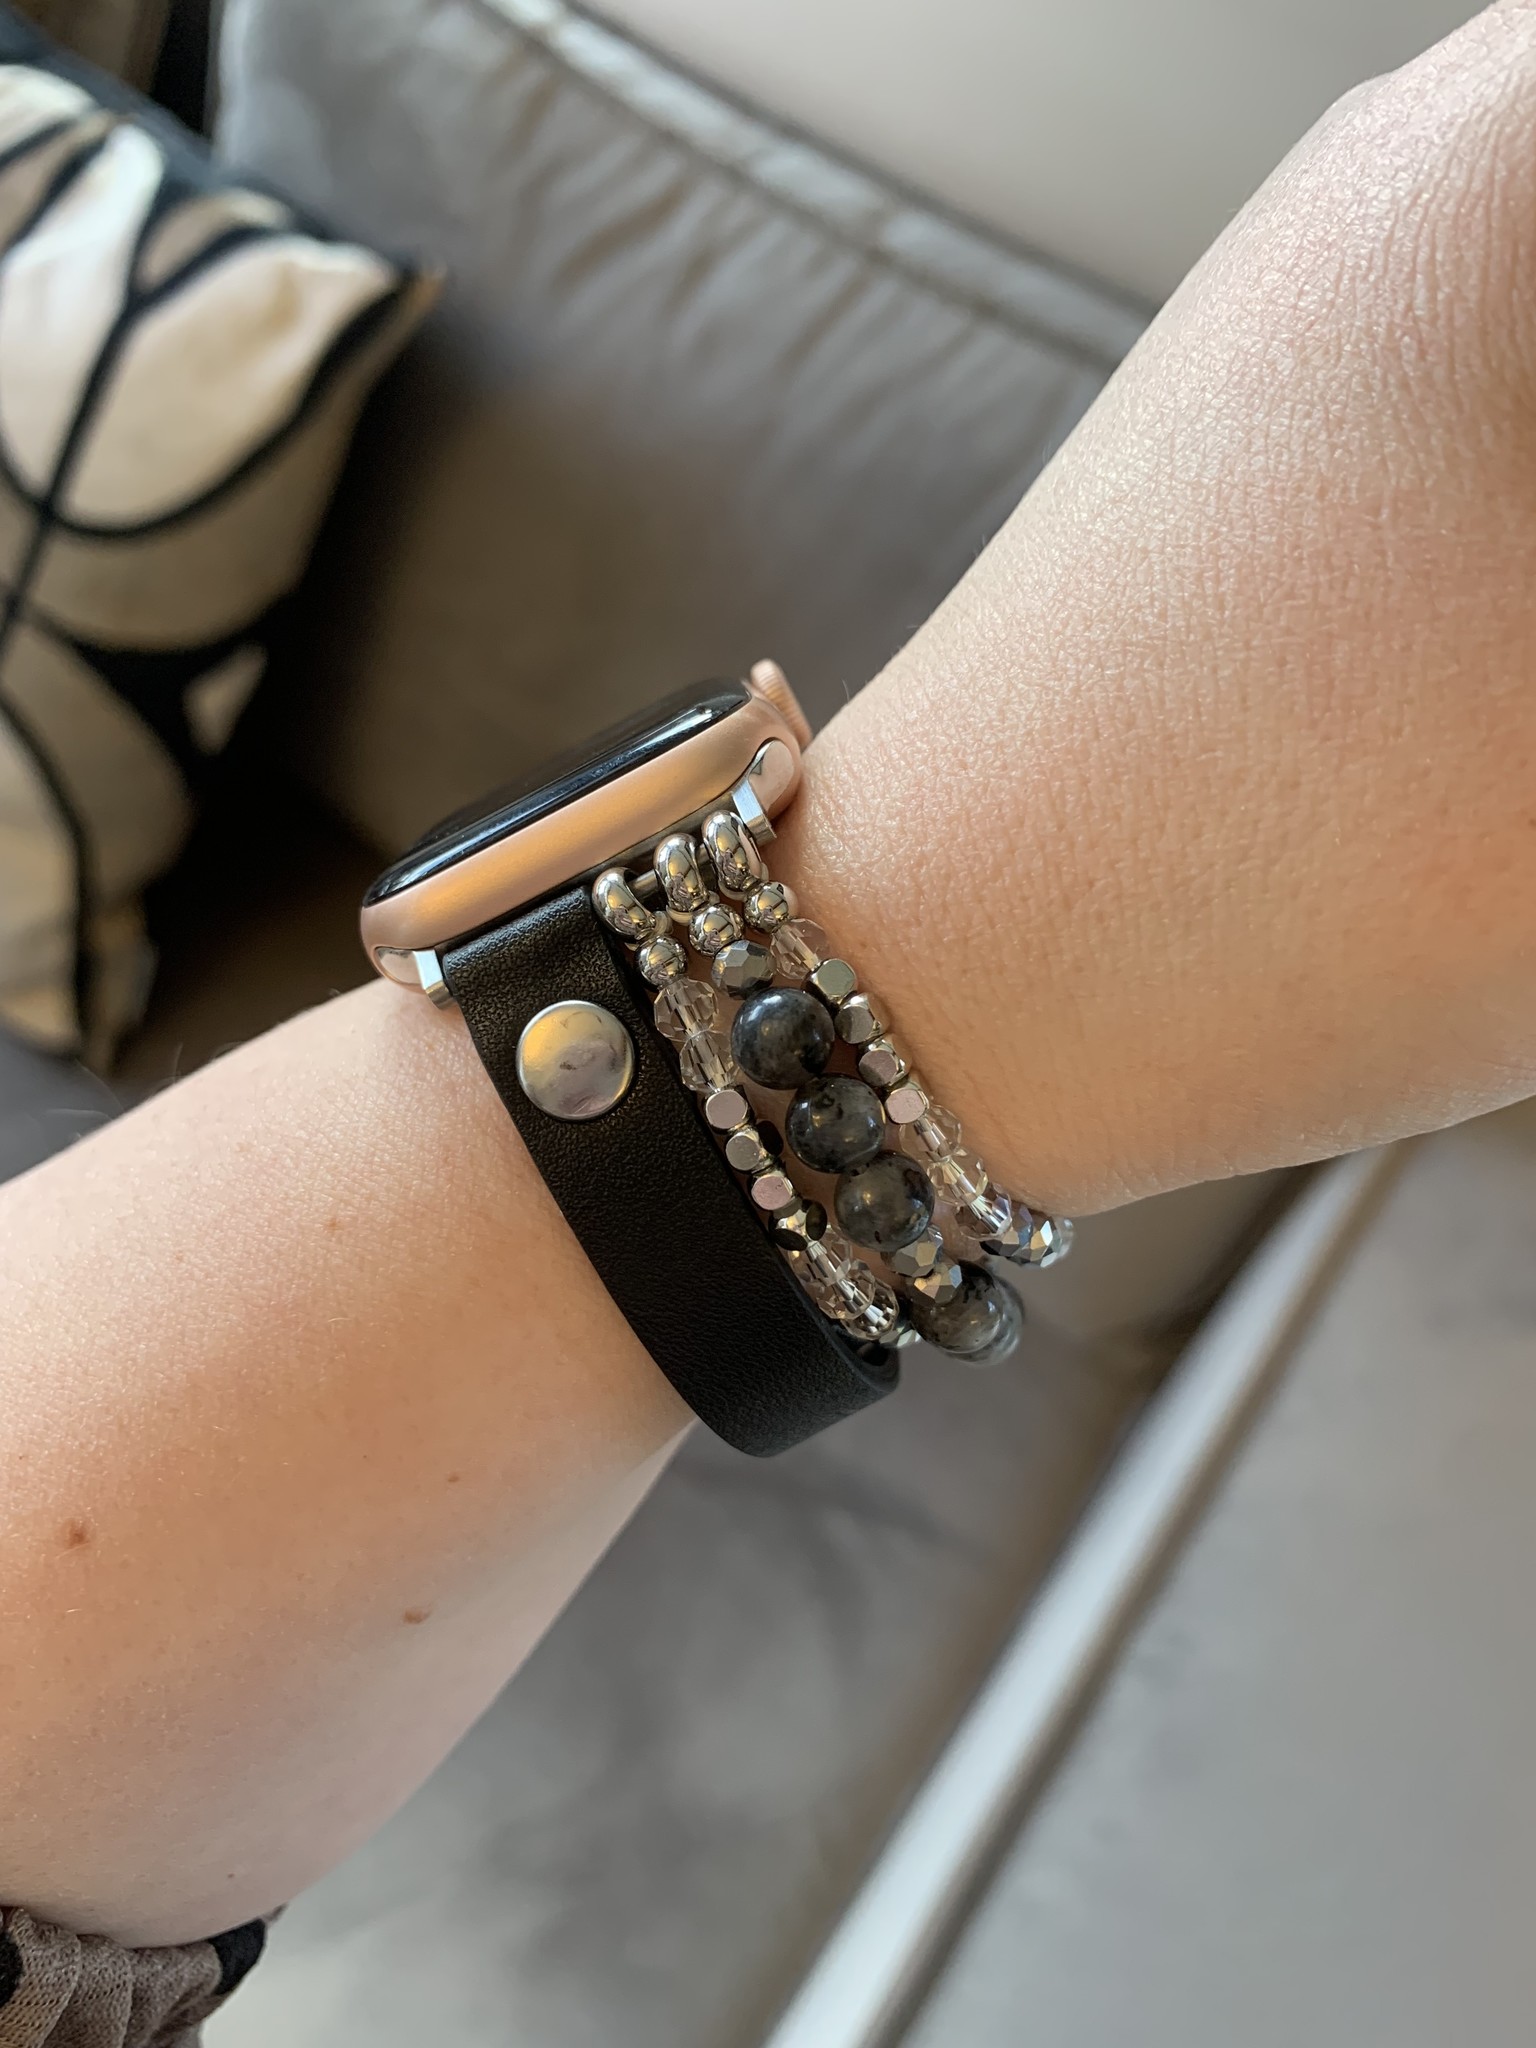 Cinturino gioiello in pelle per Apple Watch - nero